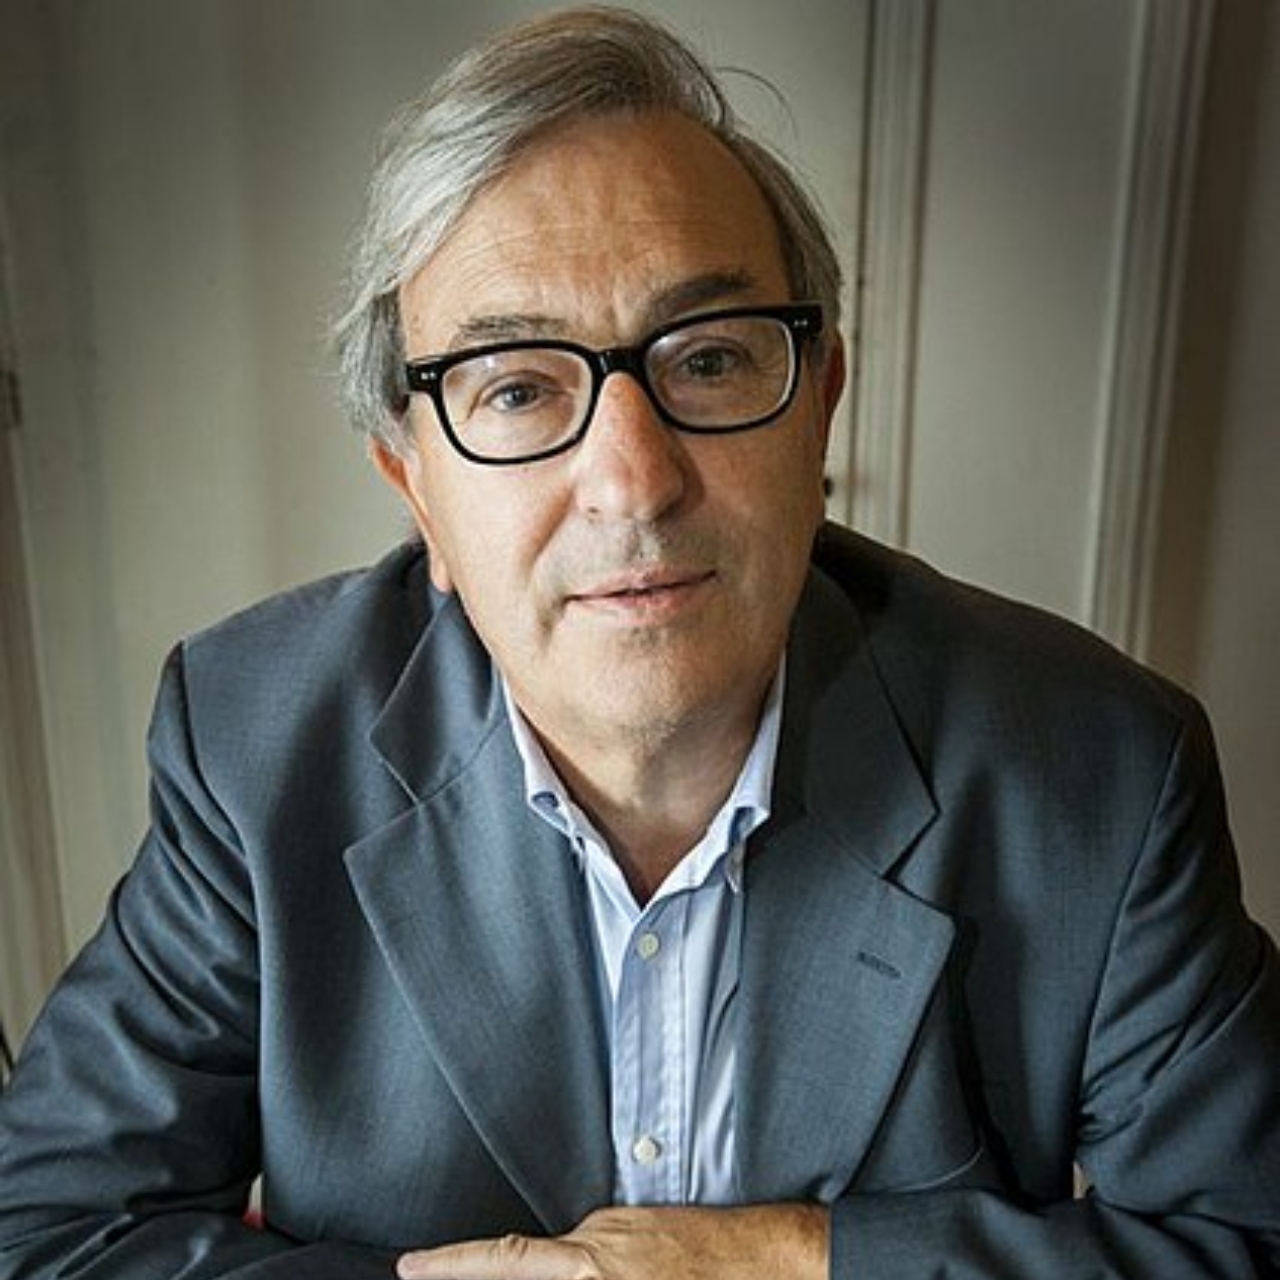 Marco Ferrari, jornalista italiano que escreveu 'a incrível história de antónio salazar, o ditador que morreu duas vezes'